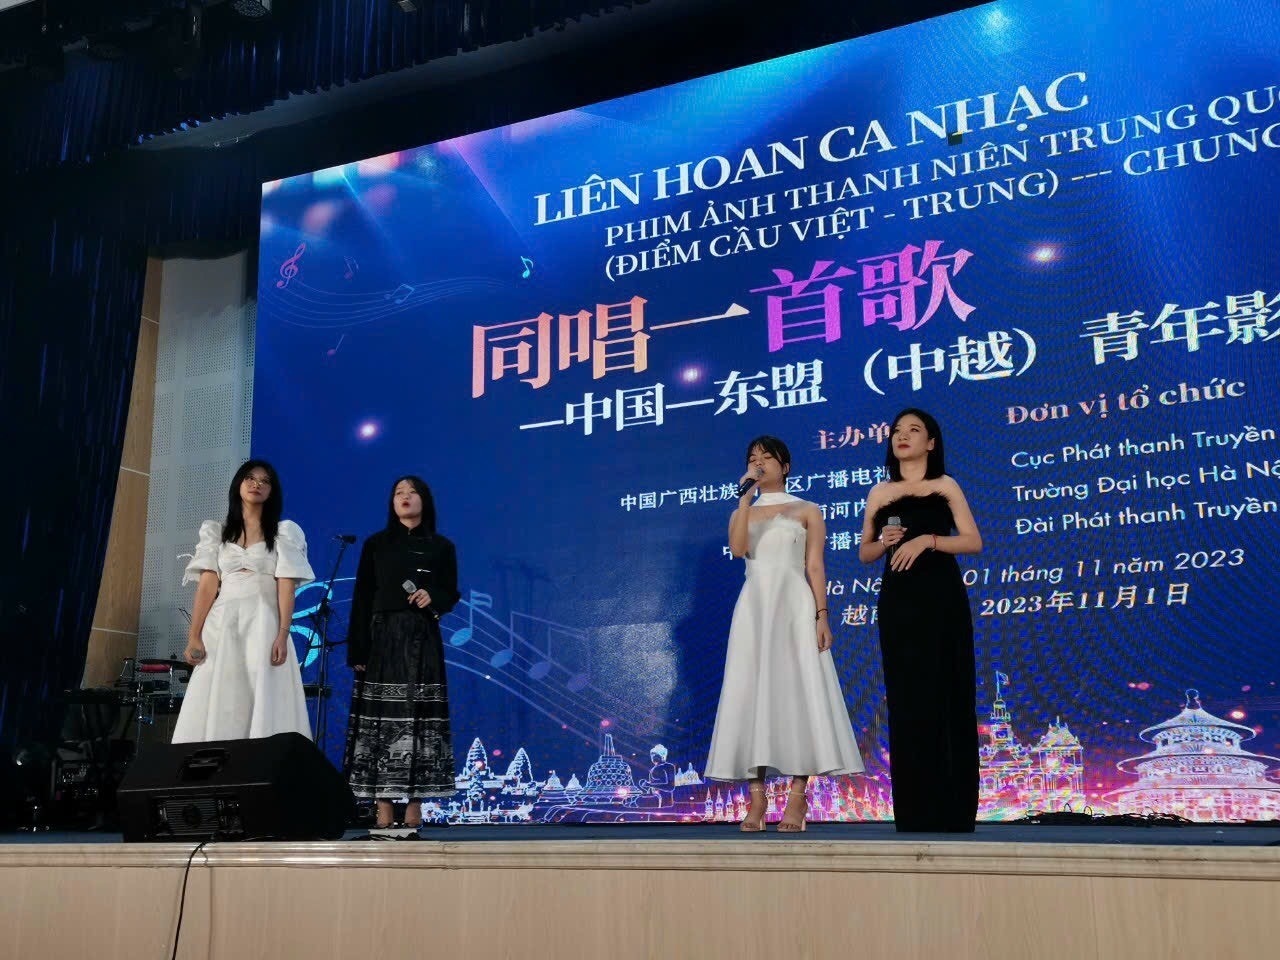 400 Vietnamese, Chinese Youth Exchange Music in Hanoi